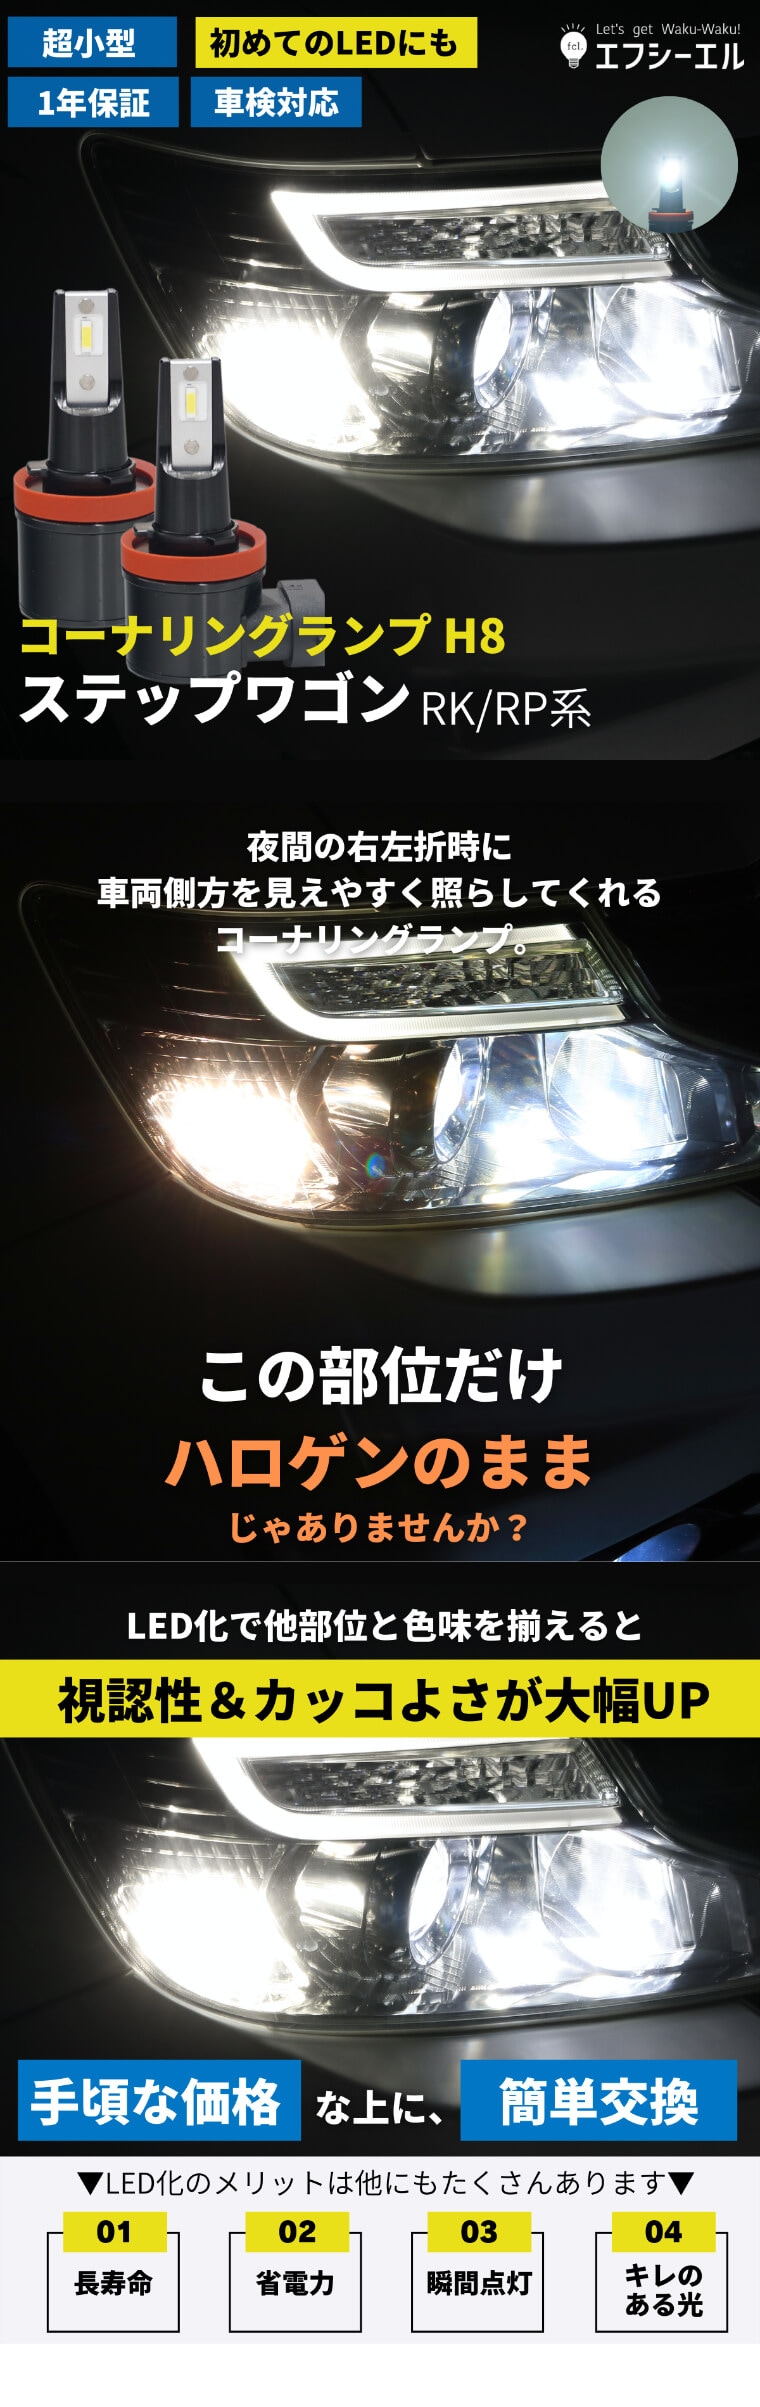 コーナリングランプ ステップワゴン専用 RK/RP系【公式通販】fcl. 車のLED専門店